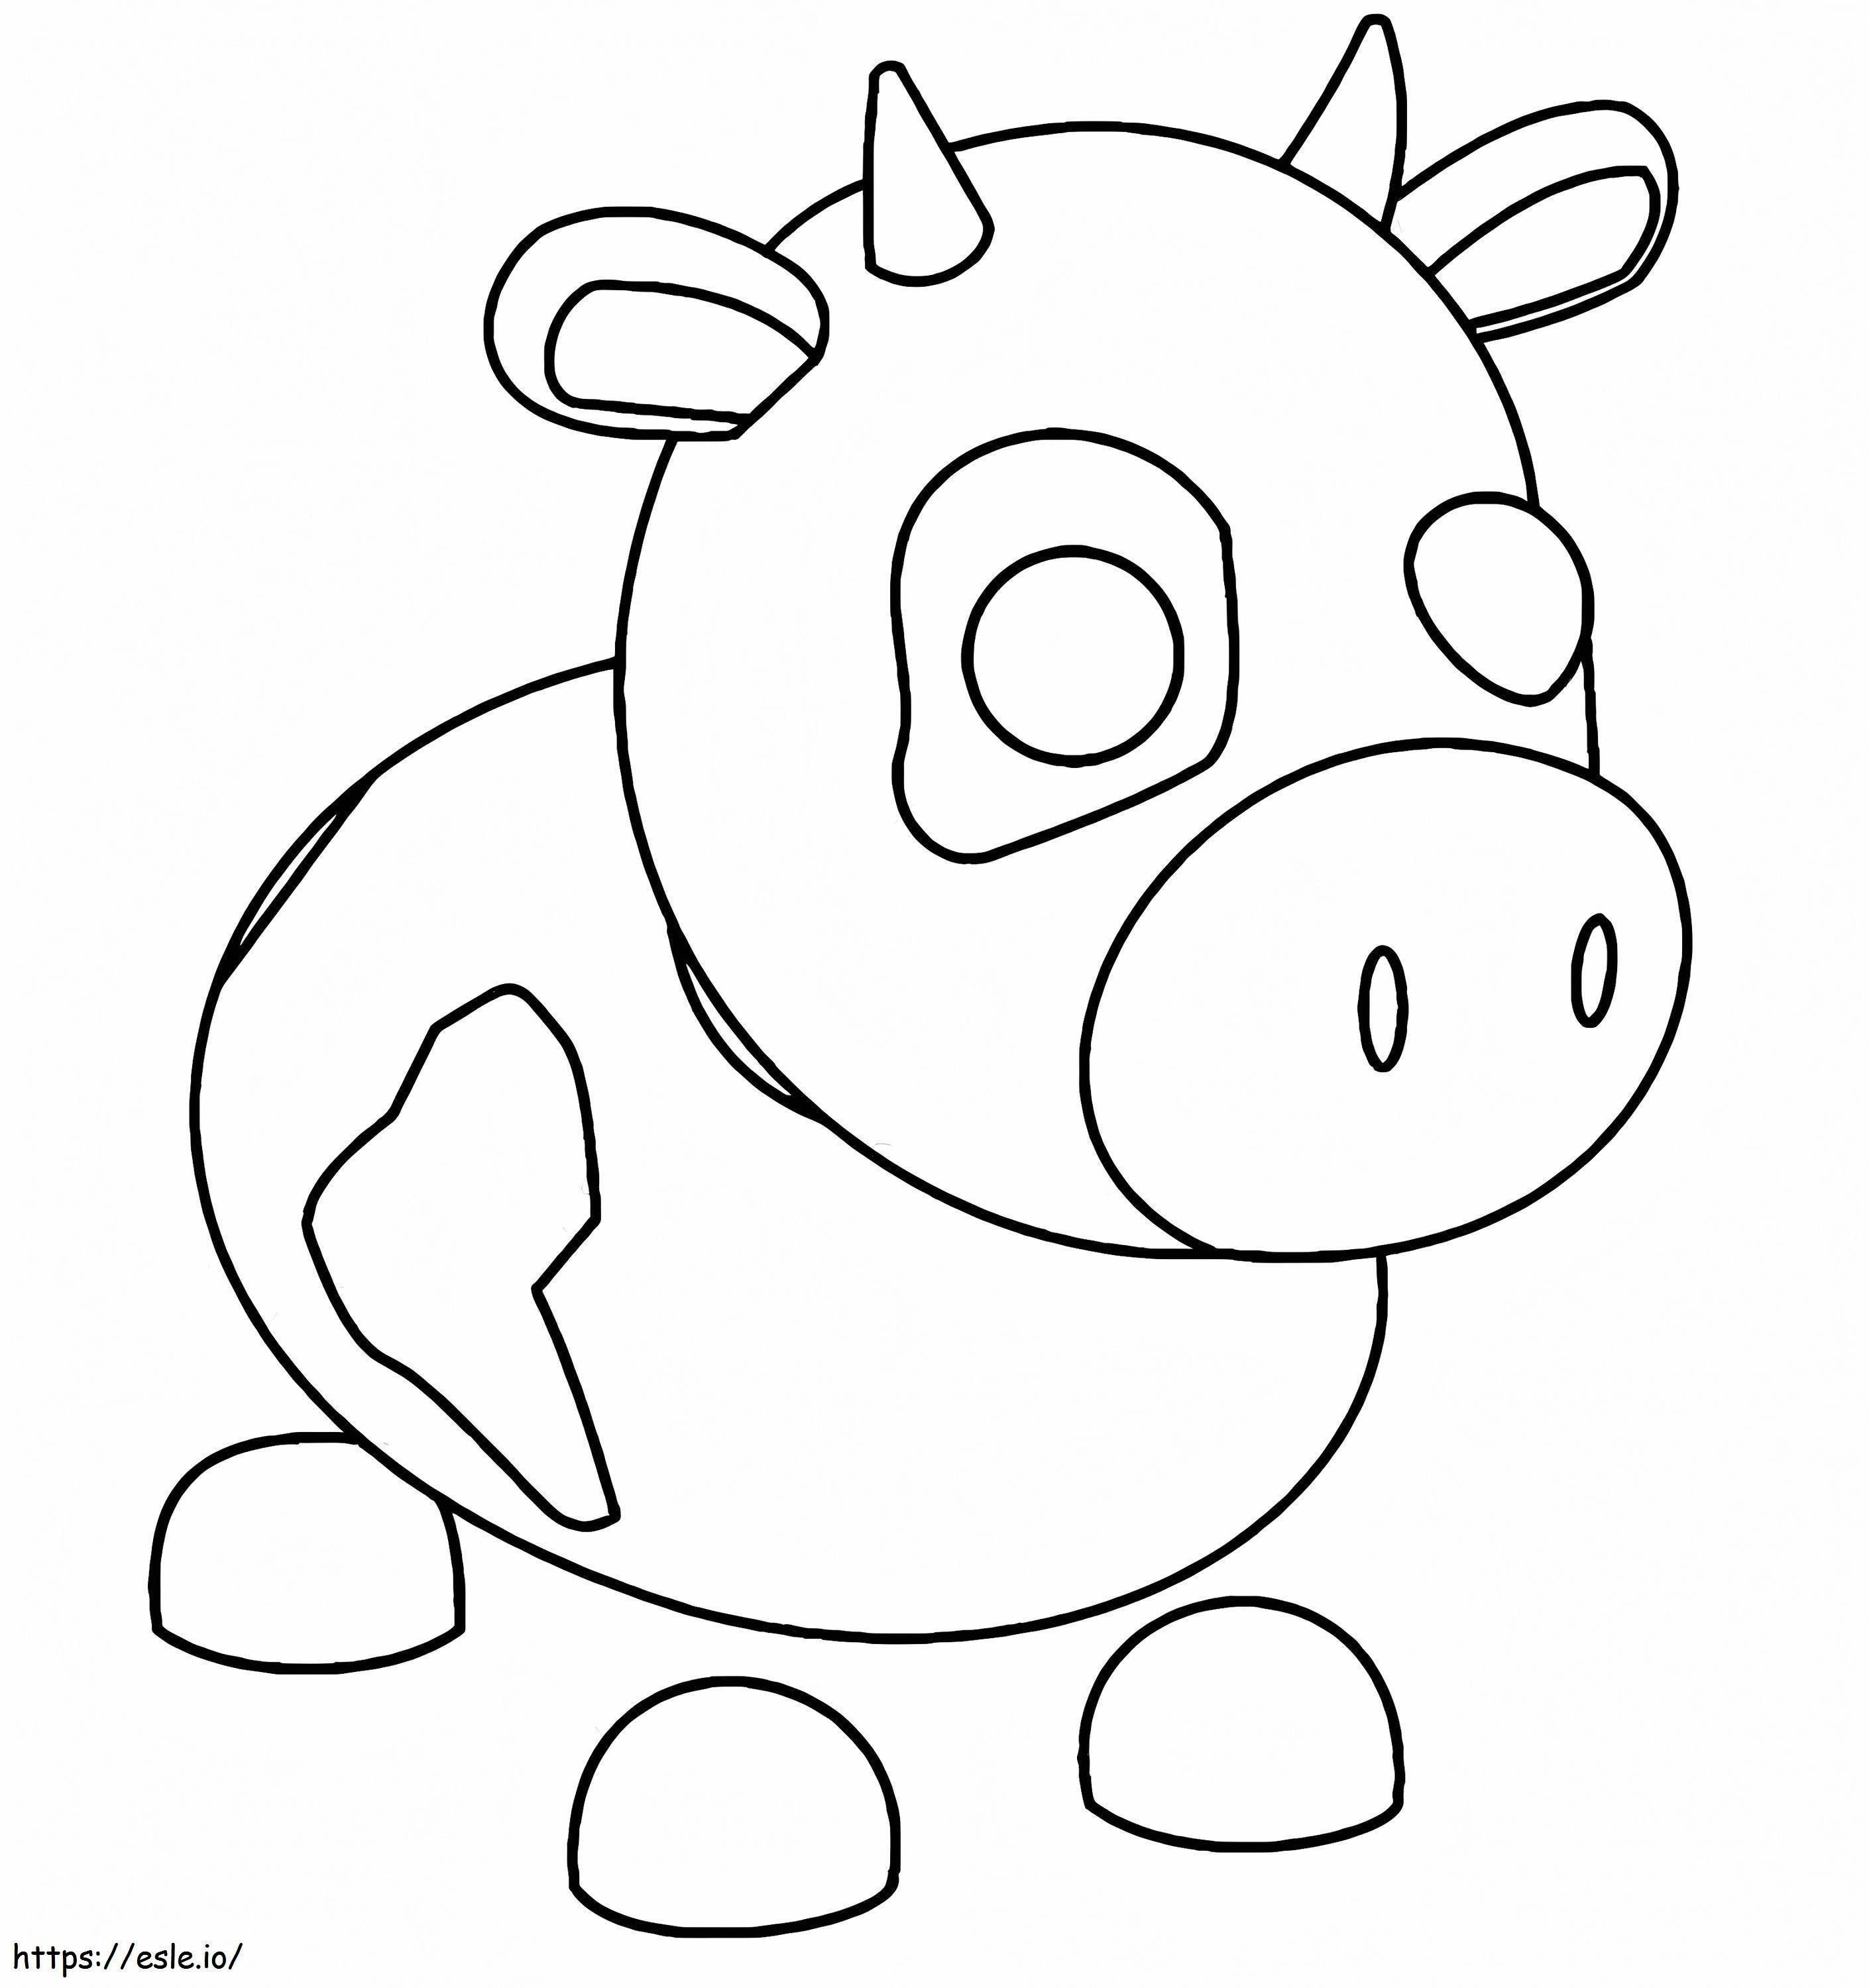 Coloriage Vache Adoptez-moi à imprimer dessin